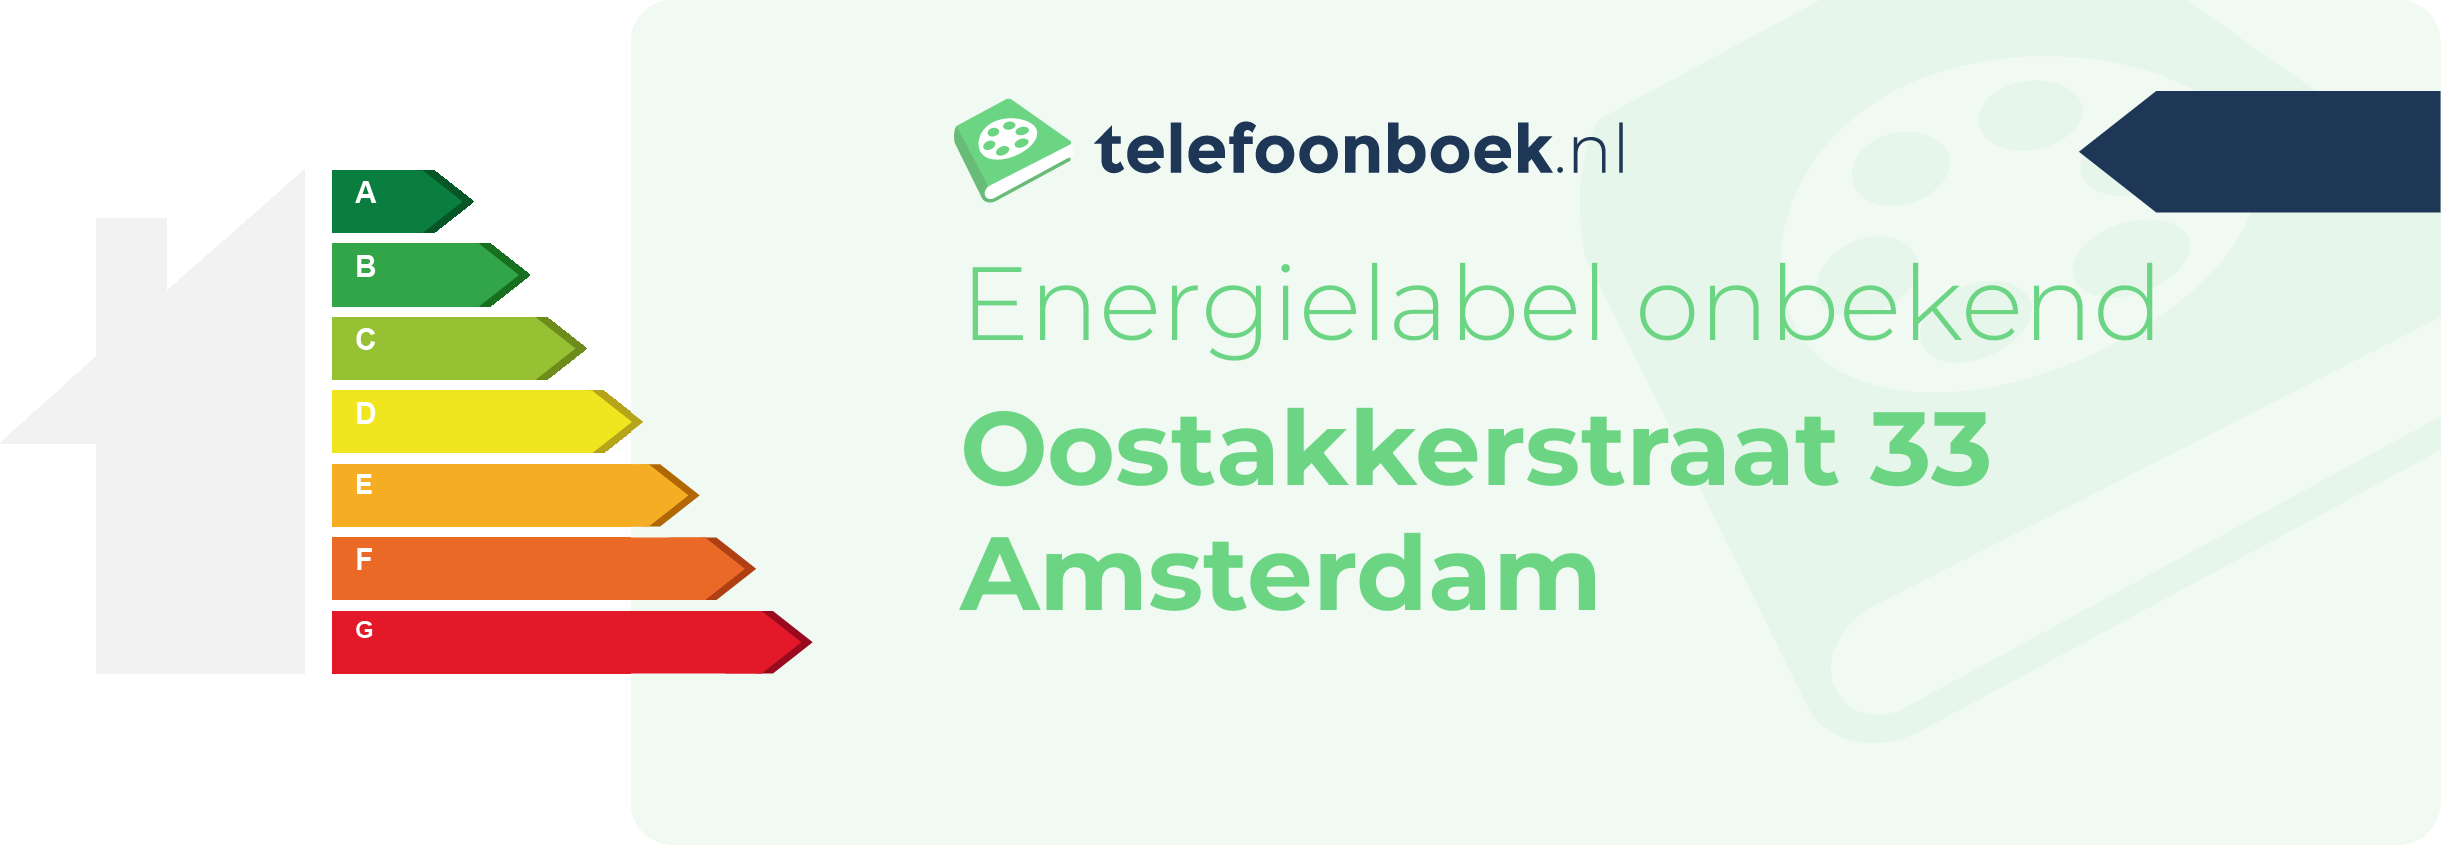 Energielabel Oostakkerstraat 33 Amsterdam